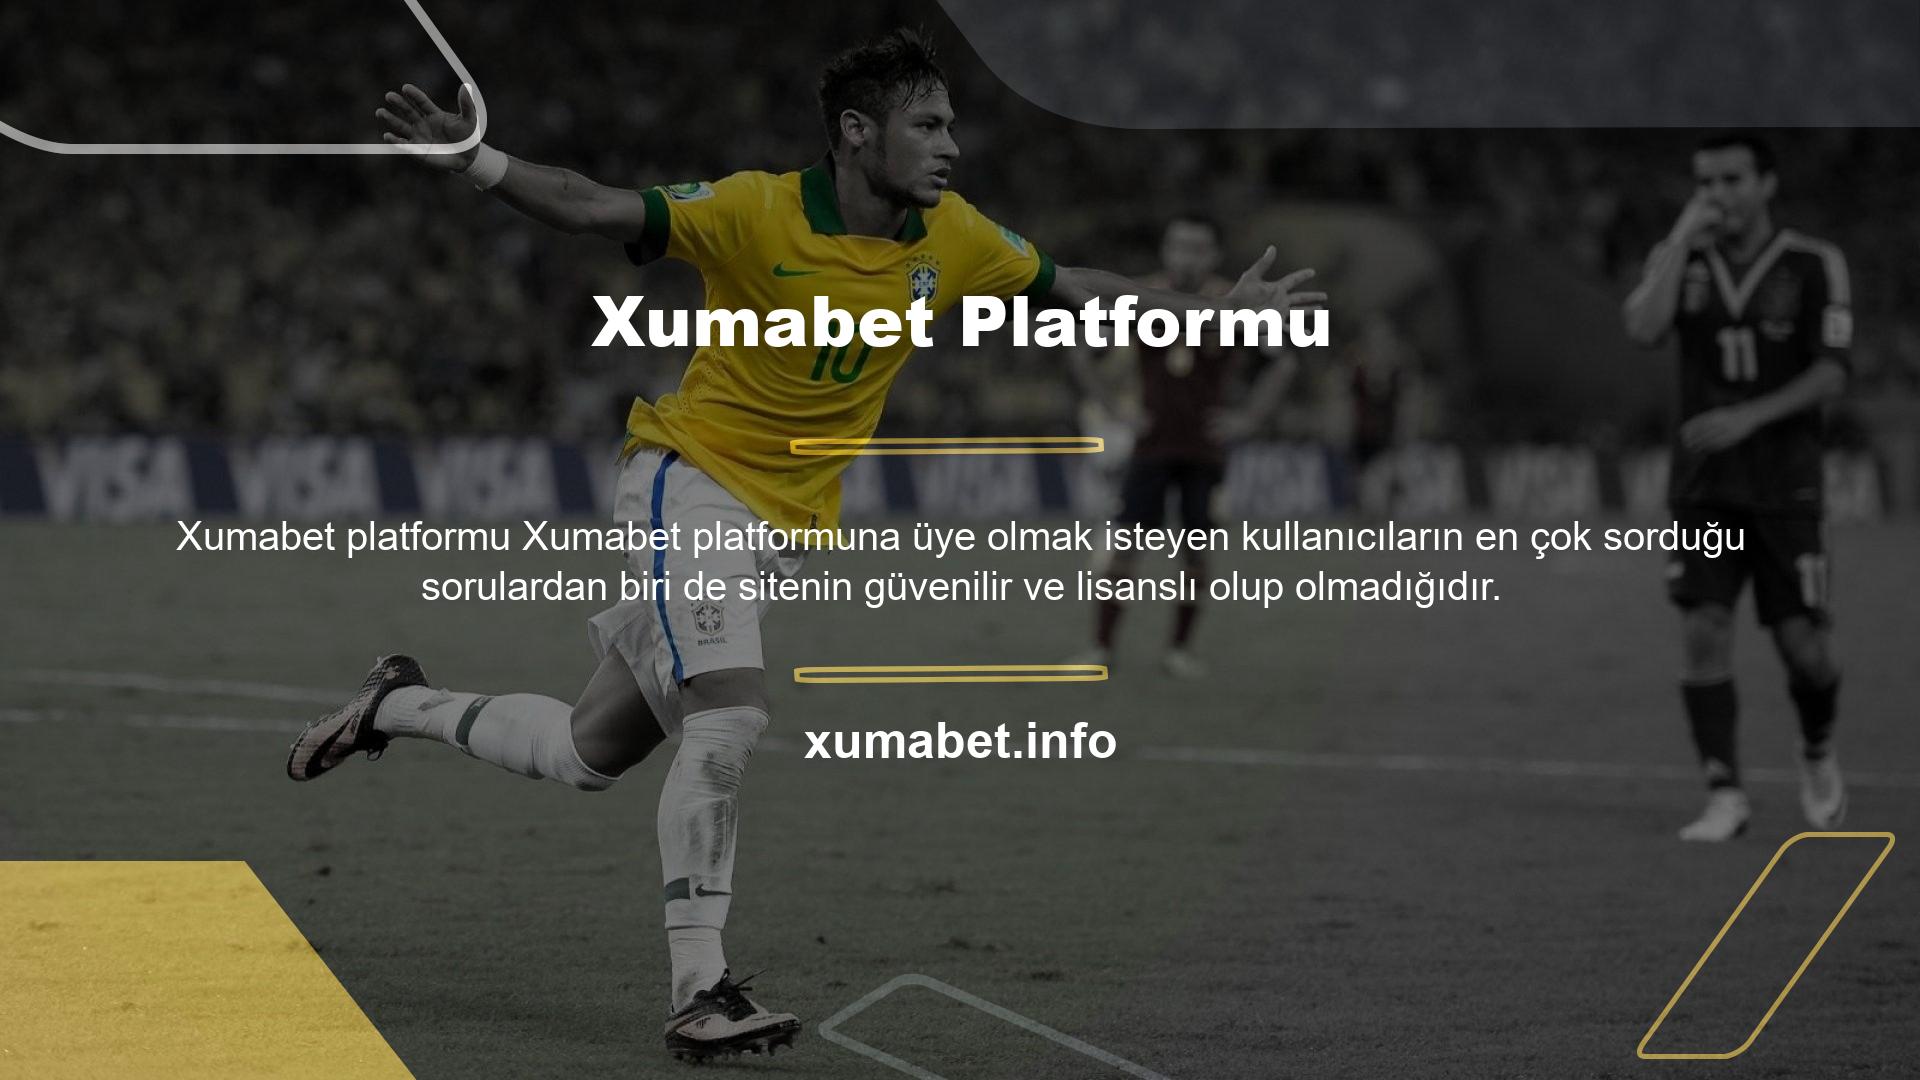 Xumabet platformuna üye olmak isteyen kullanıcıların en çok sorduğu sorulardan biri de sitenin güvenilir ve lisanslı olup olmadığıdır